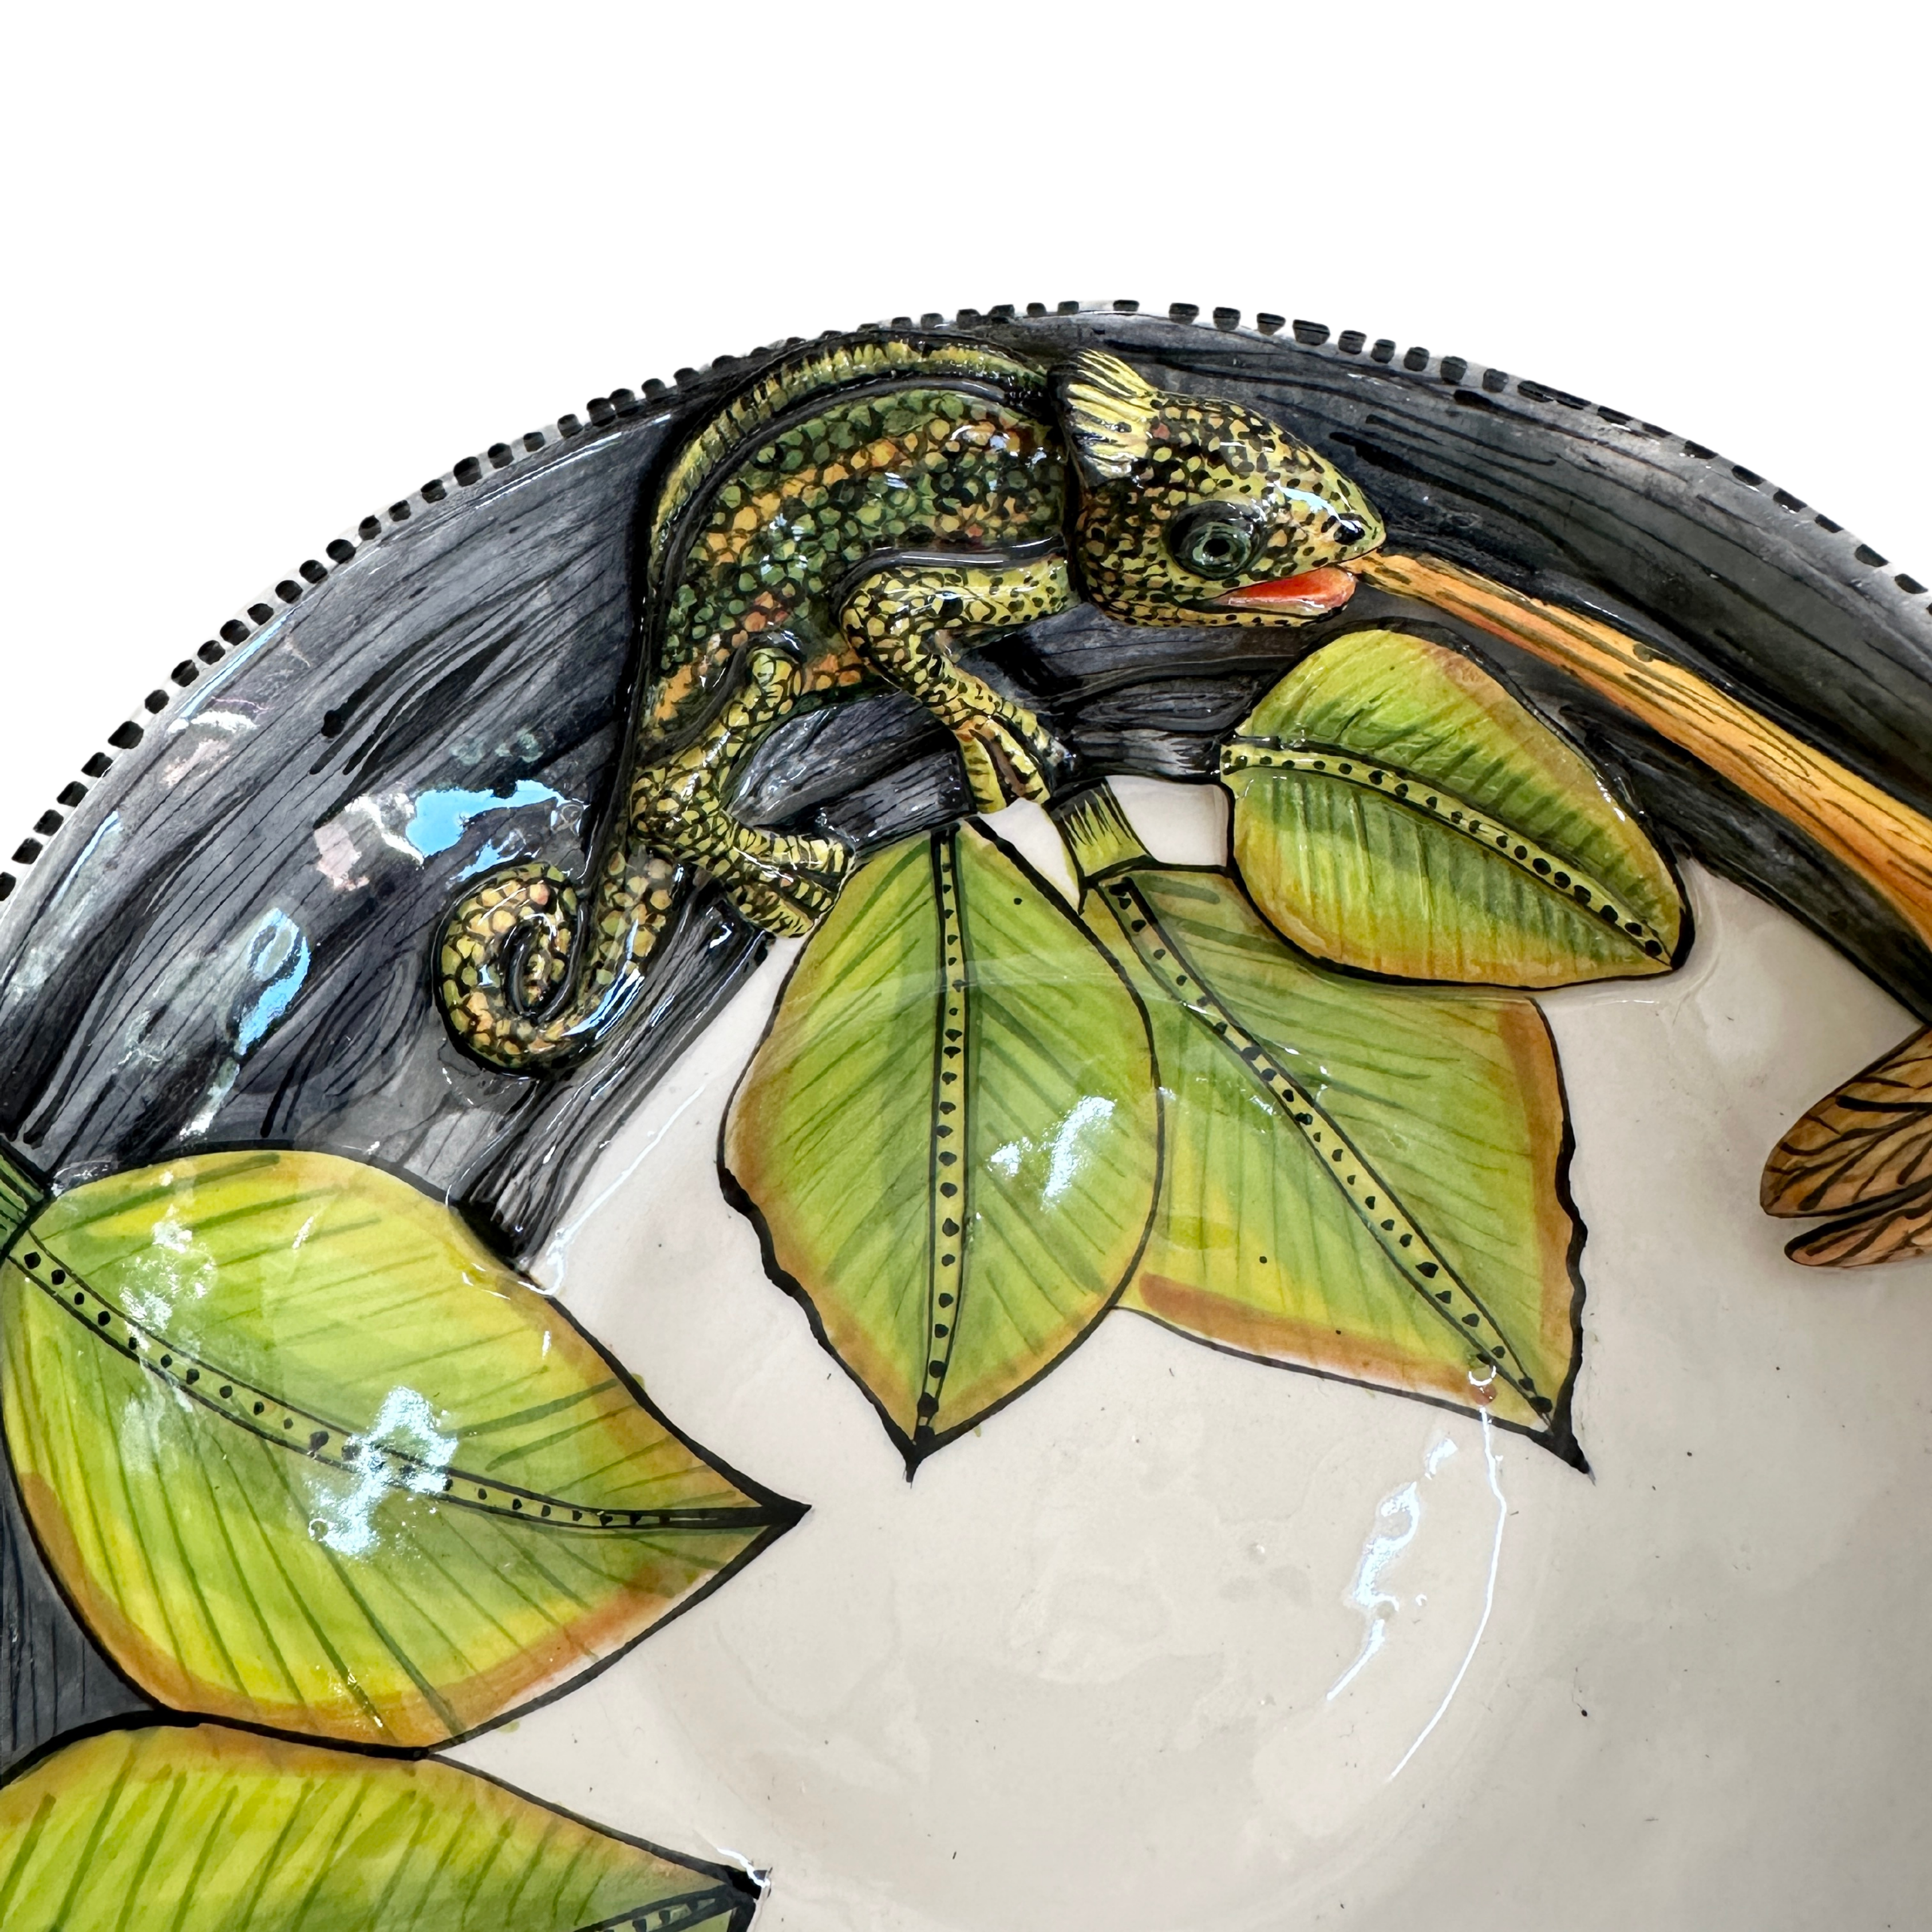 3D Animated Ceramic Chameleon Bowl